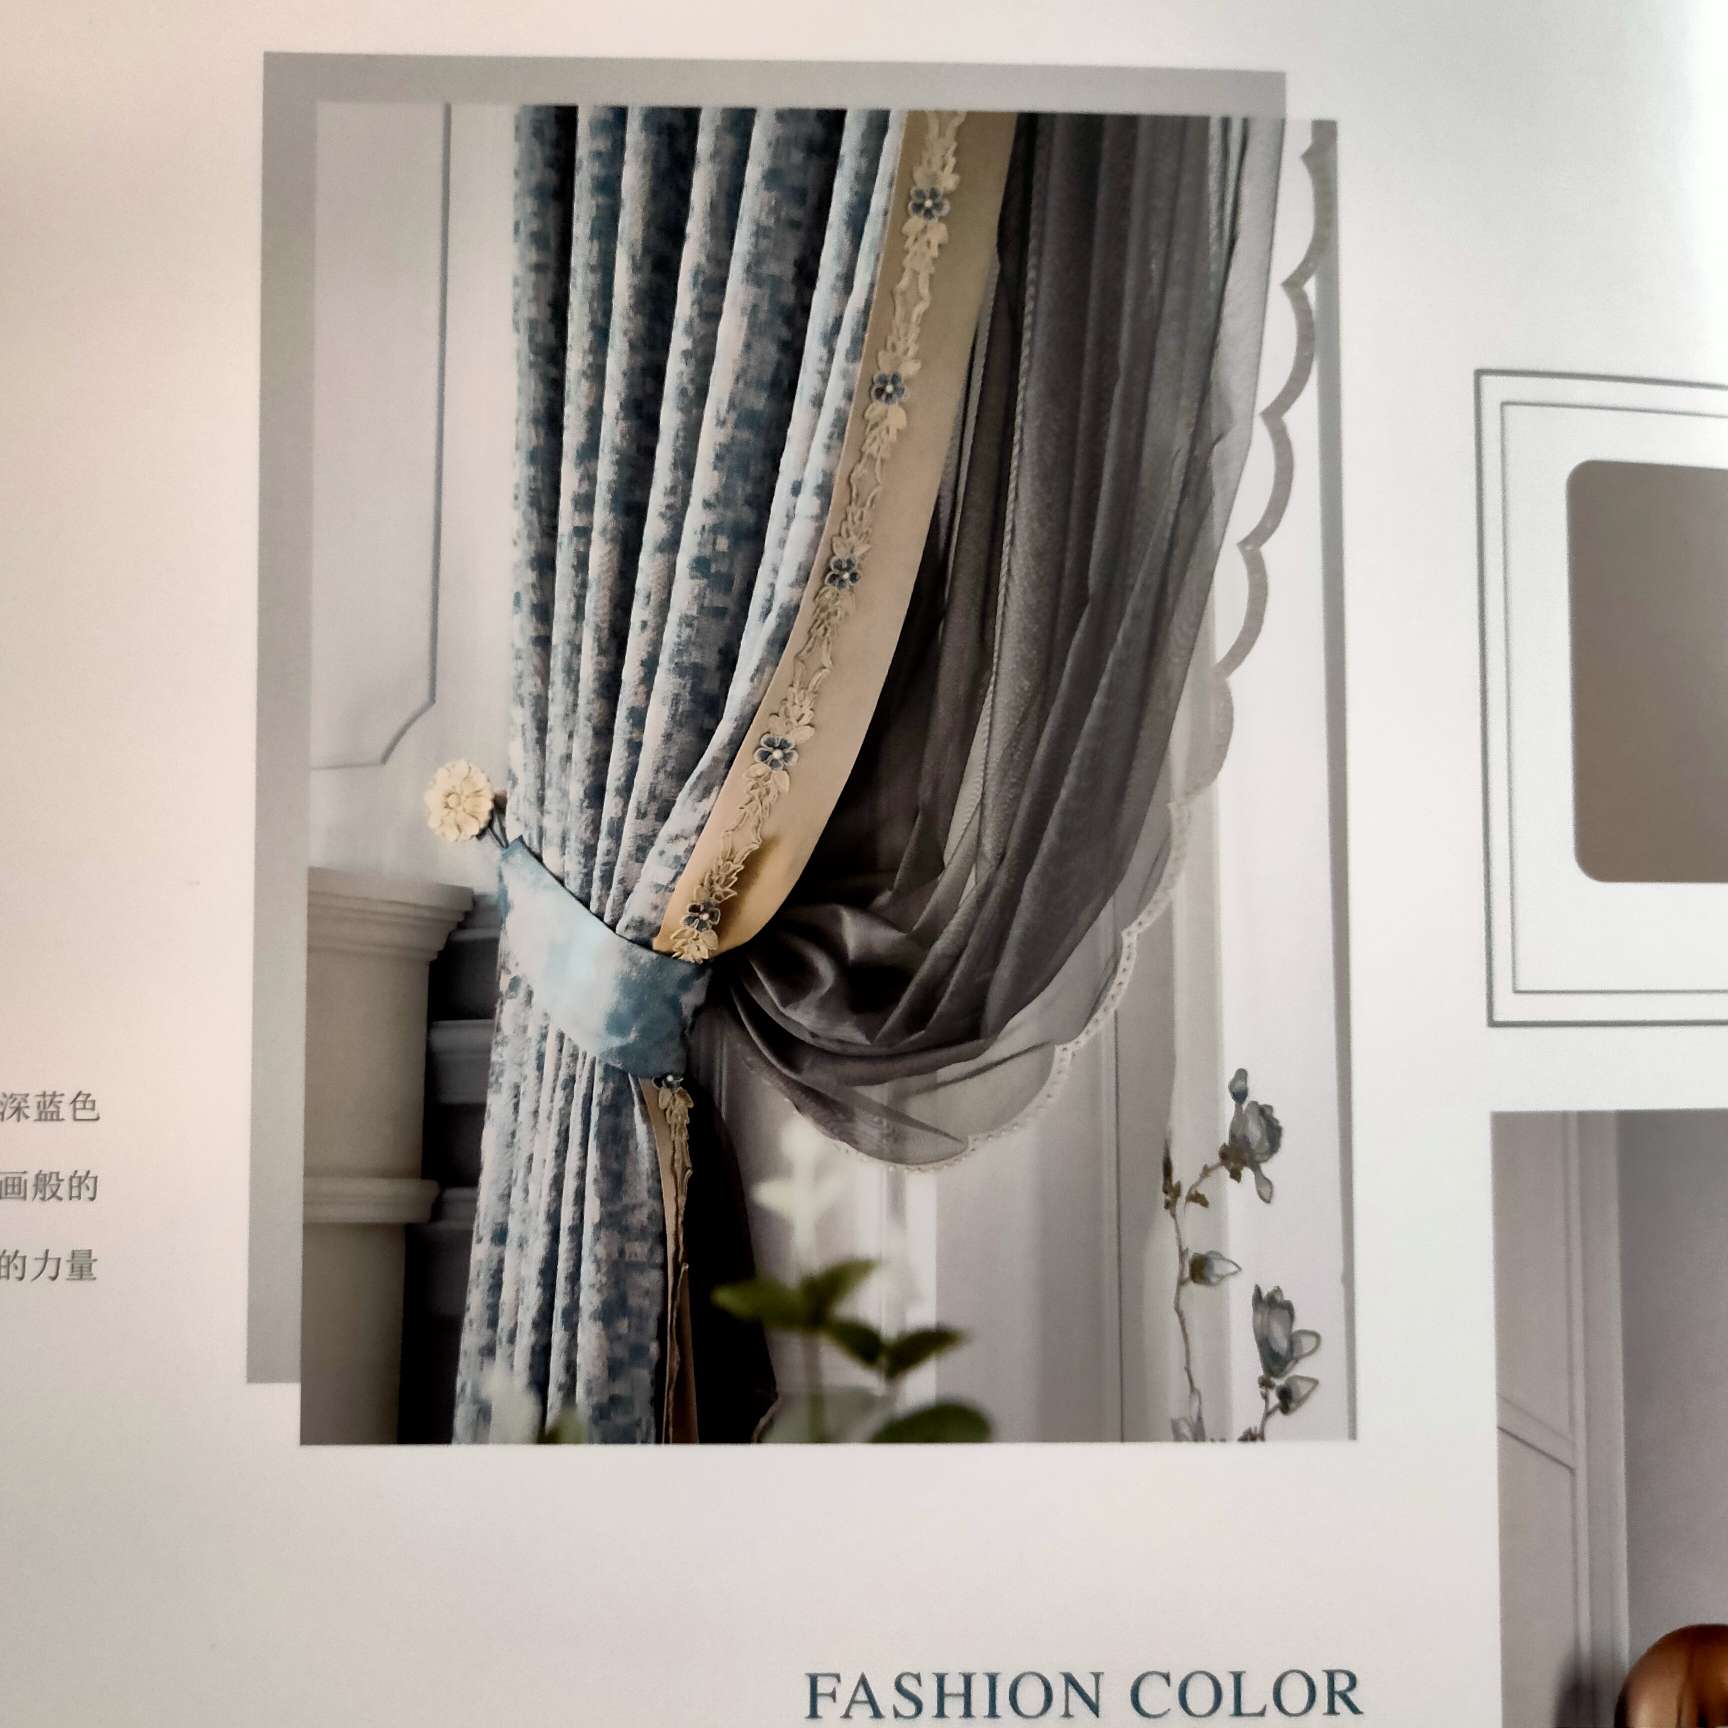 法式轻奢系列窗帘高端高精密提花深蓝色带幔窗帘4m内产品图